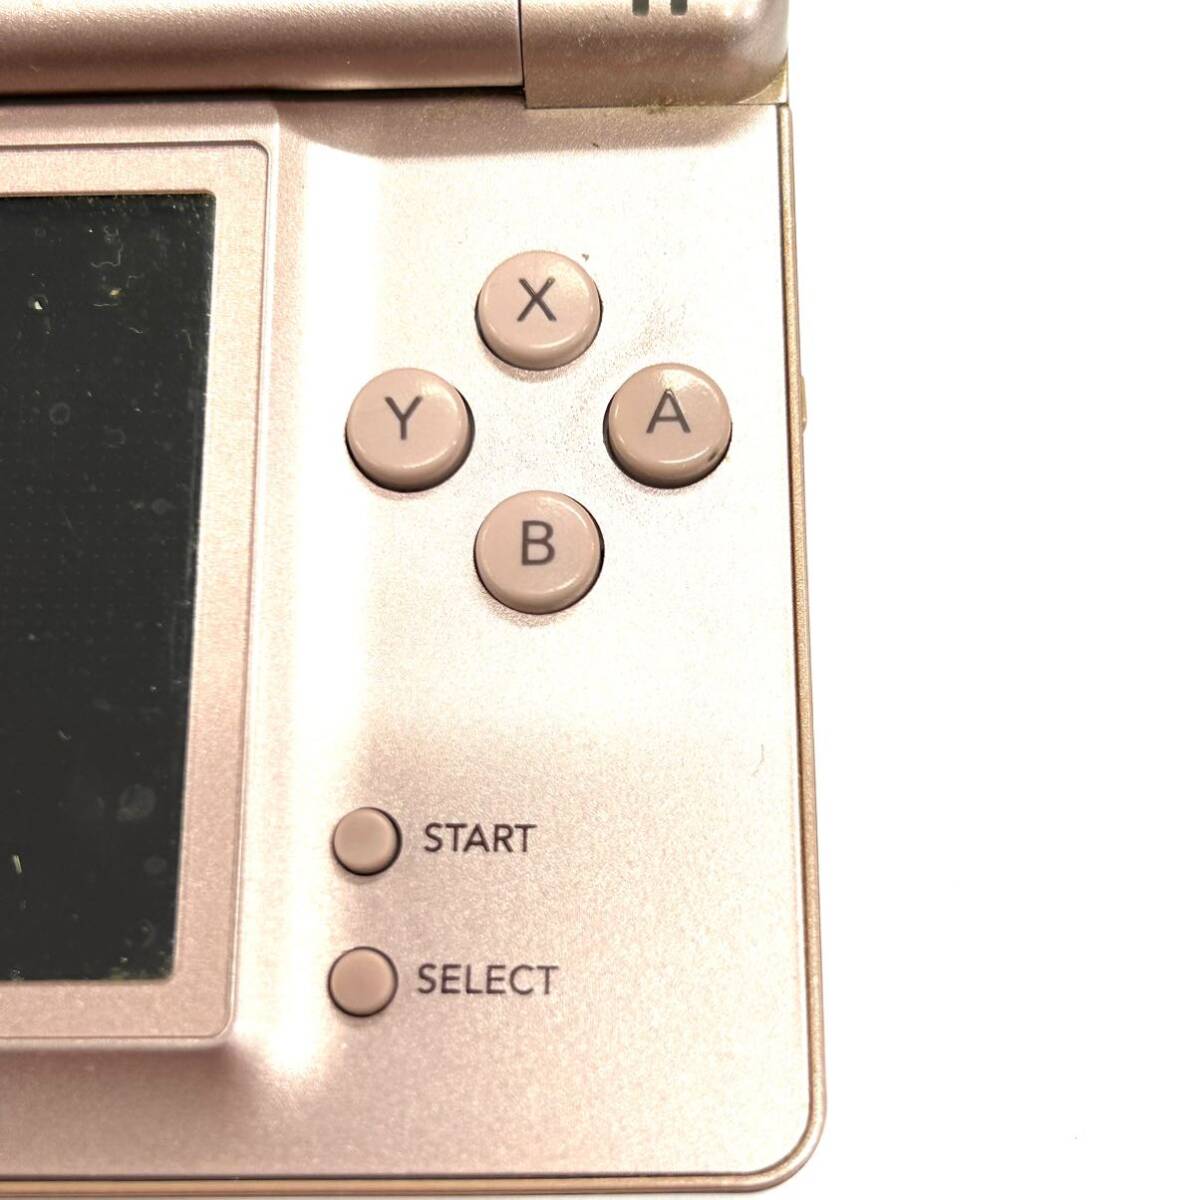 Y496 ゲーム機 まとめ Nintendo ニンテンドー 任天堂 DS Lite USG-001 GAMEBOY ADVANCE AGB-001 ジャンク品 中古 訳ありの画像10